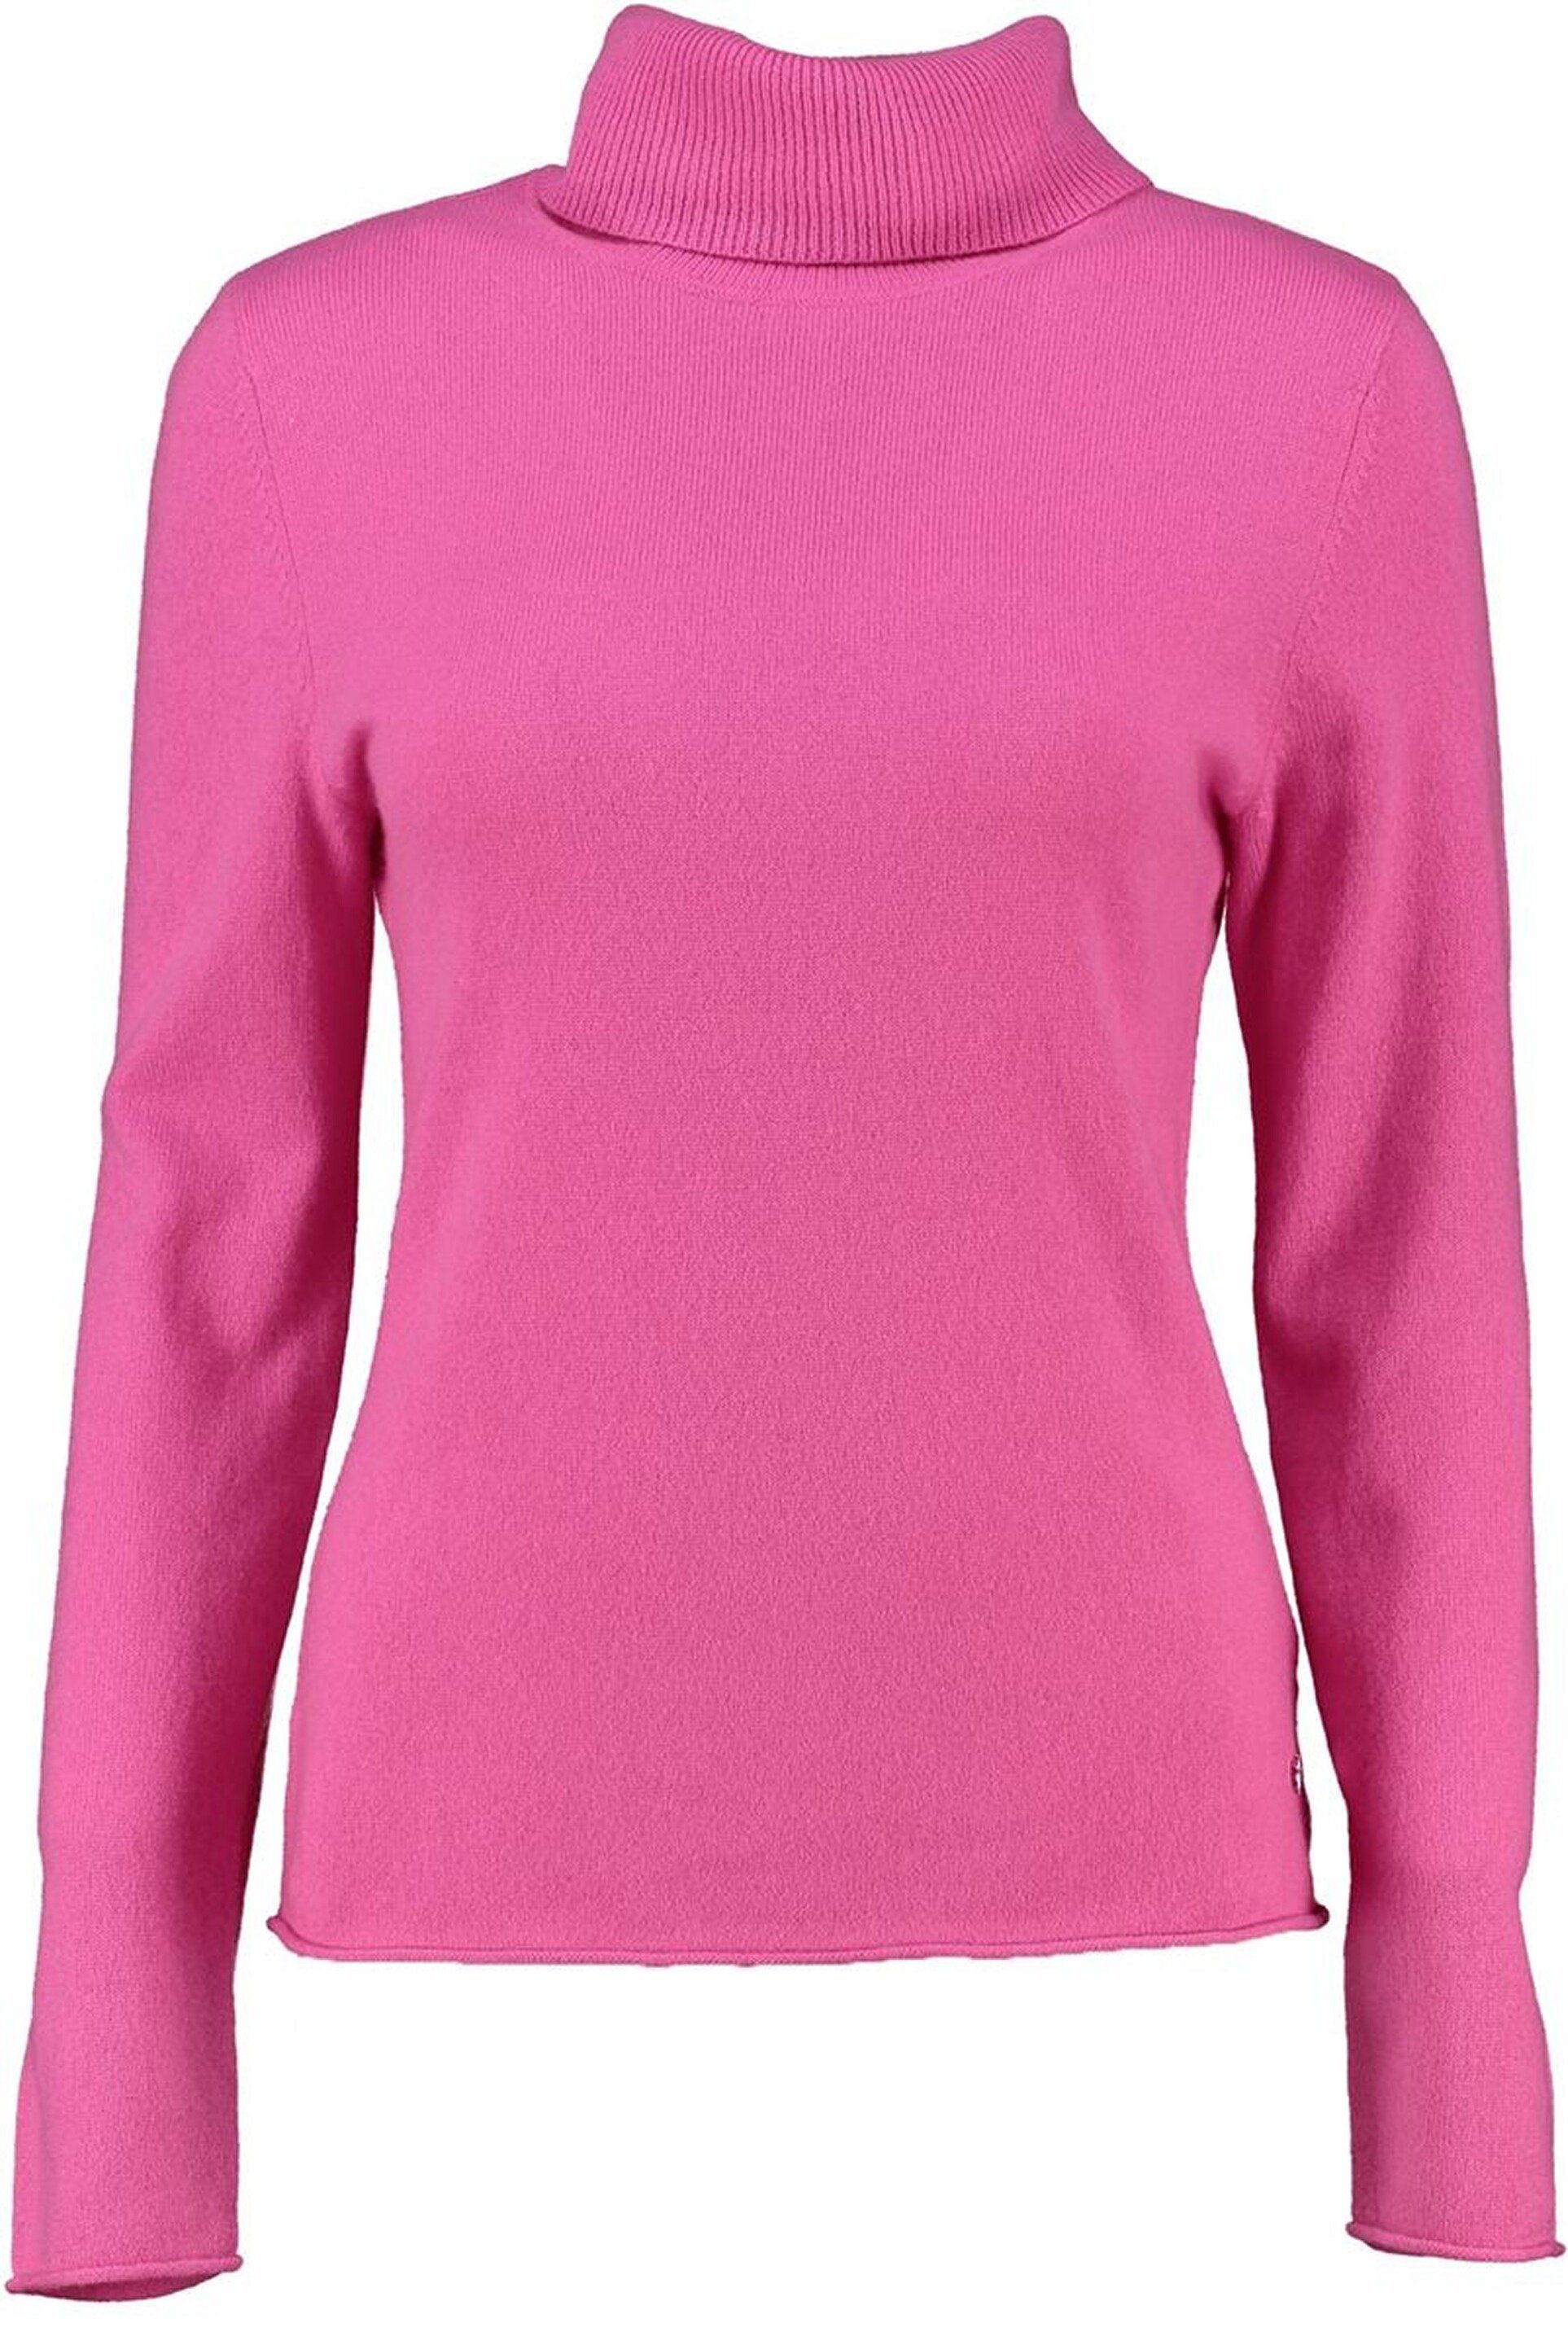 FYNCH-HATTON Rollkragenpullover FYNCH HATTON Rollkragen-Pullover pink aus hochwertigem Kaschmir | Rollkragenpullover